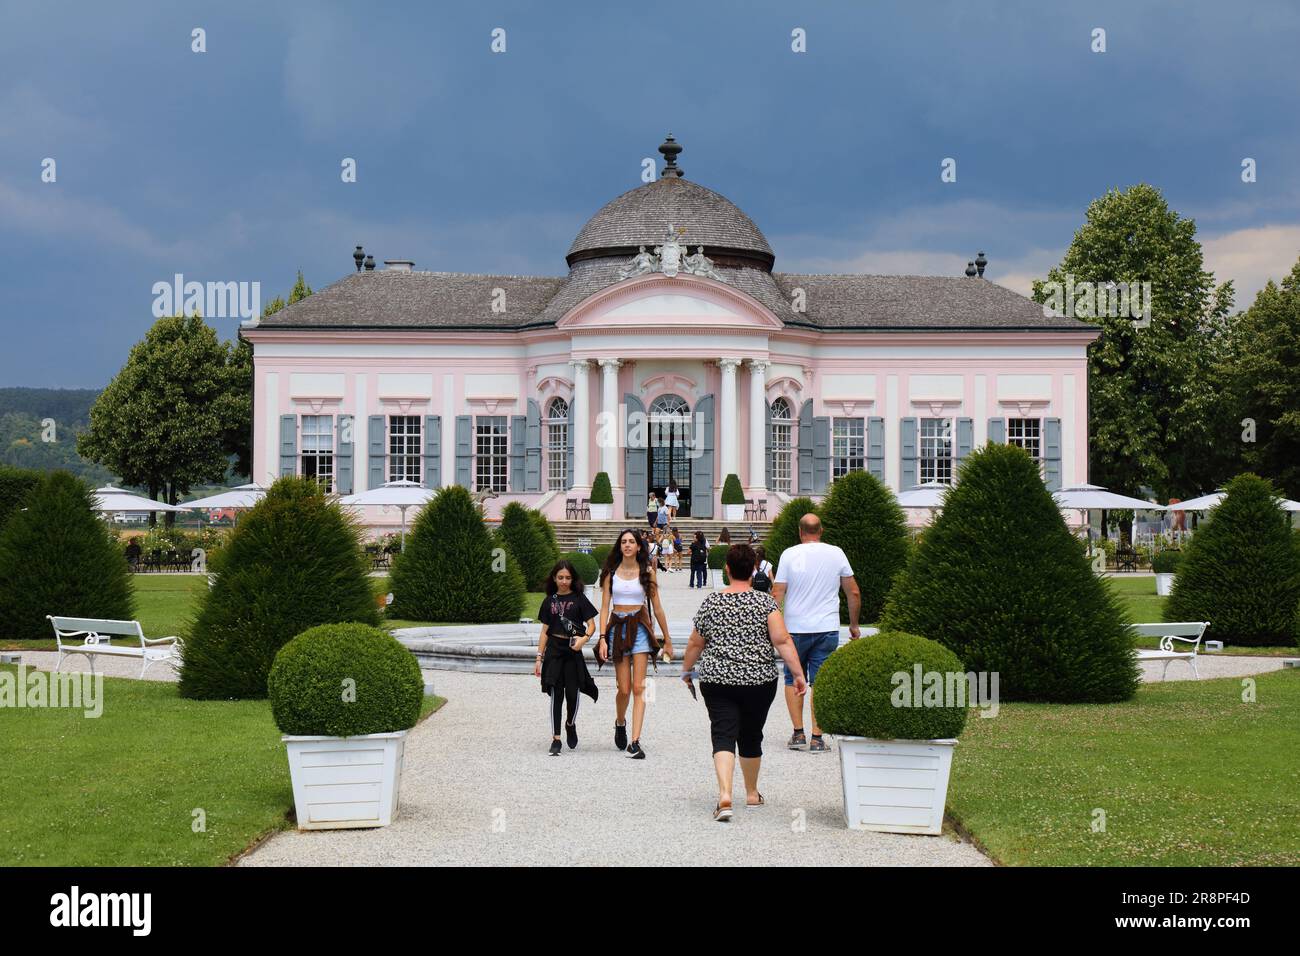 MELK, AUSTRIA - 1 AGOSTO 2022: I turisti visitano il padiglione con giardino barocco di Stift Melk (Abbazia di Melk) nella regione austriaca di Wachau. L'abbazia benedettina i Foto Stock